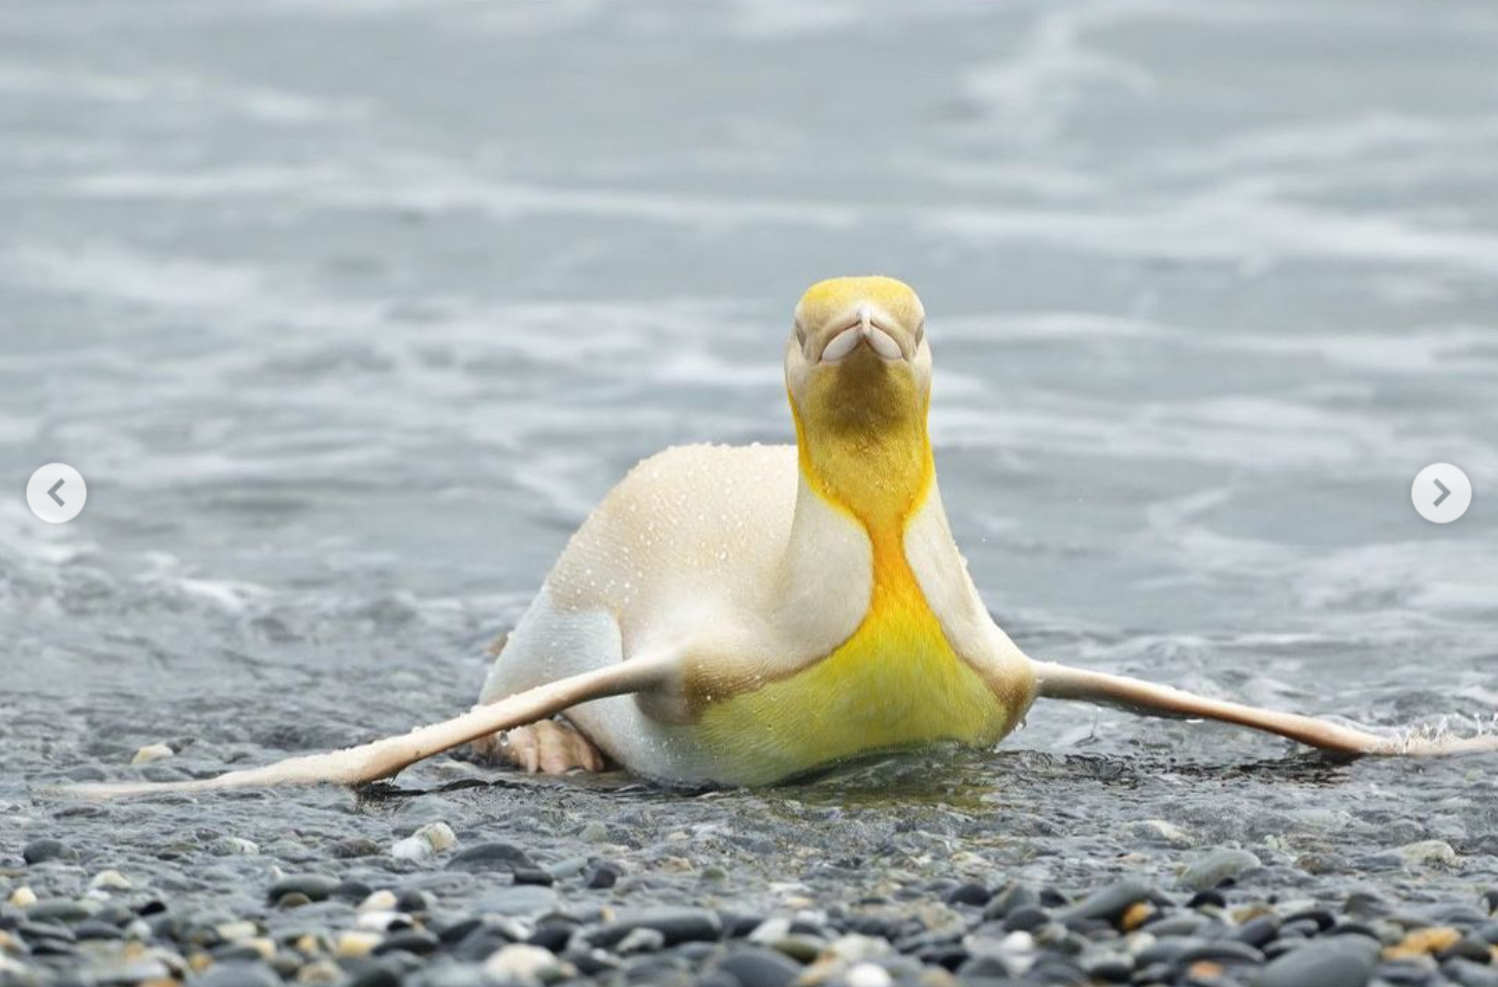 Сенсация. Впервые в мире в объектив попал желтый пингвин (ФОТО) 5